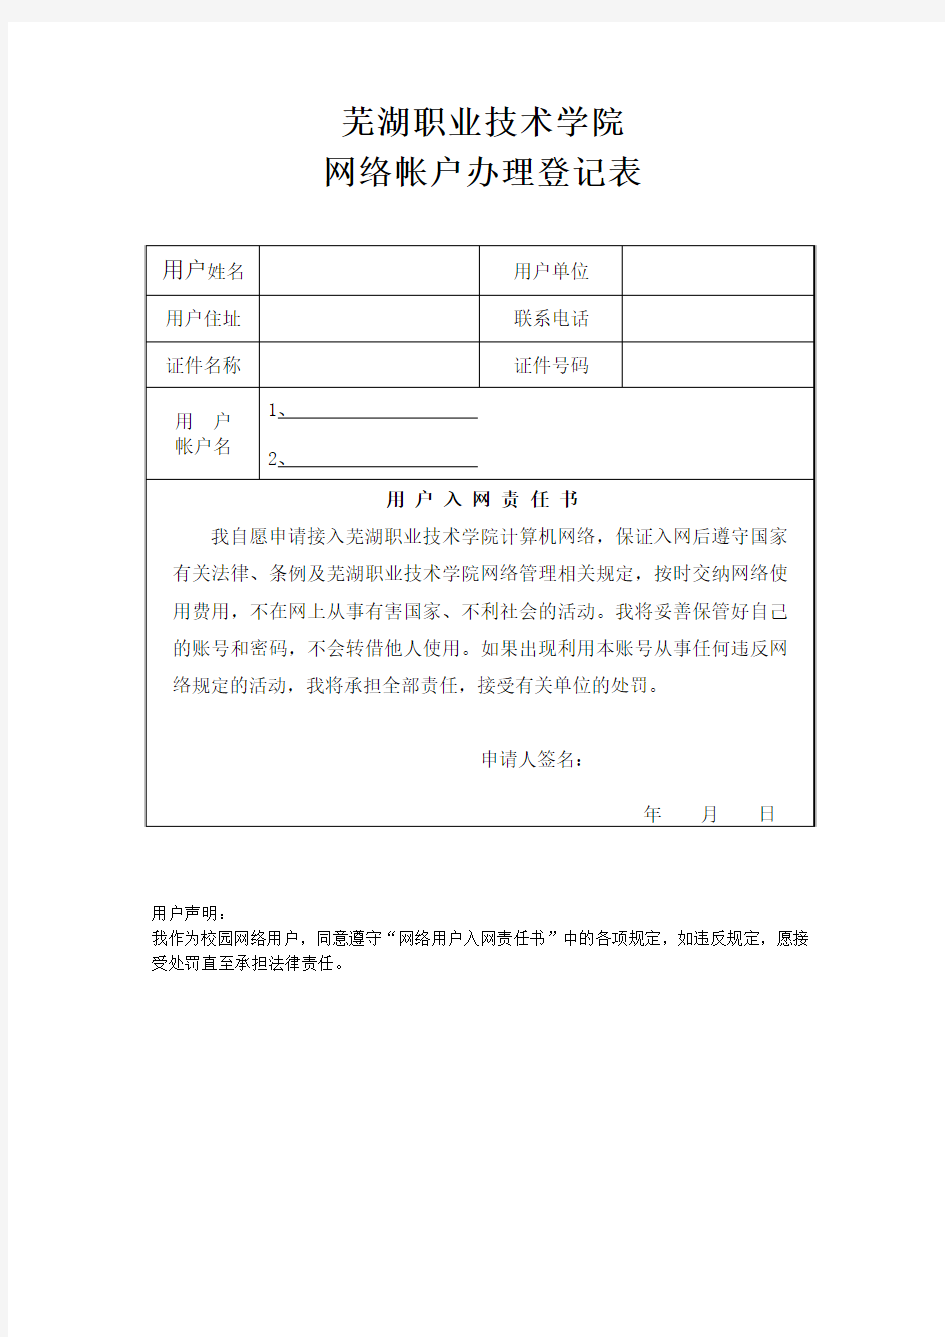 芜湖职业技术学院校园网入网用户申请表(学生用户)